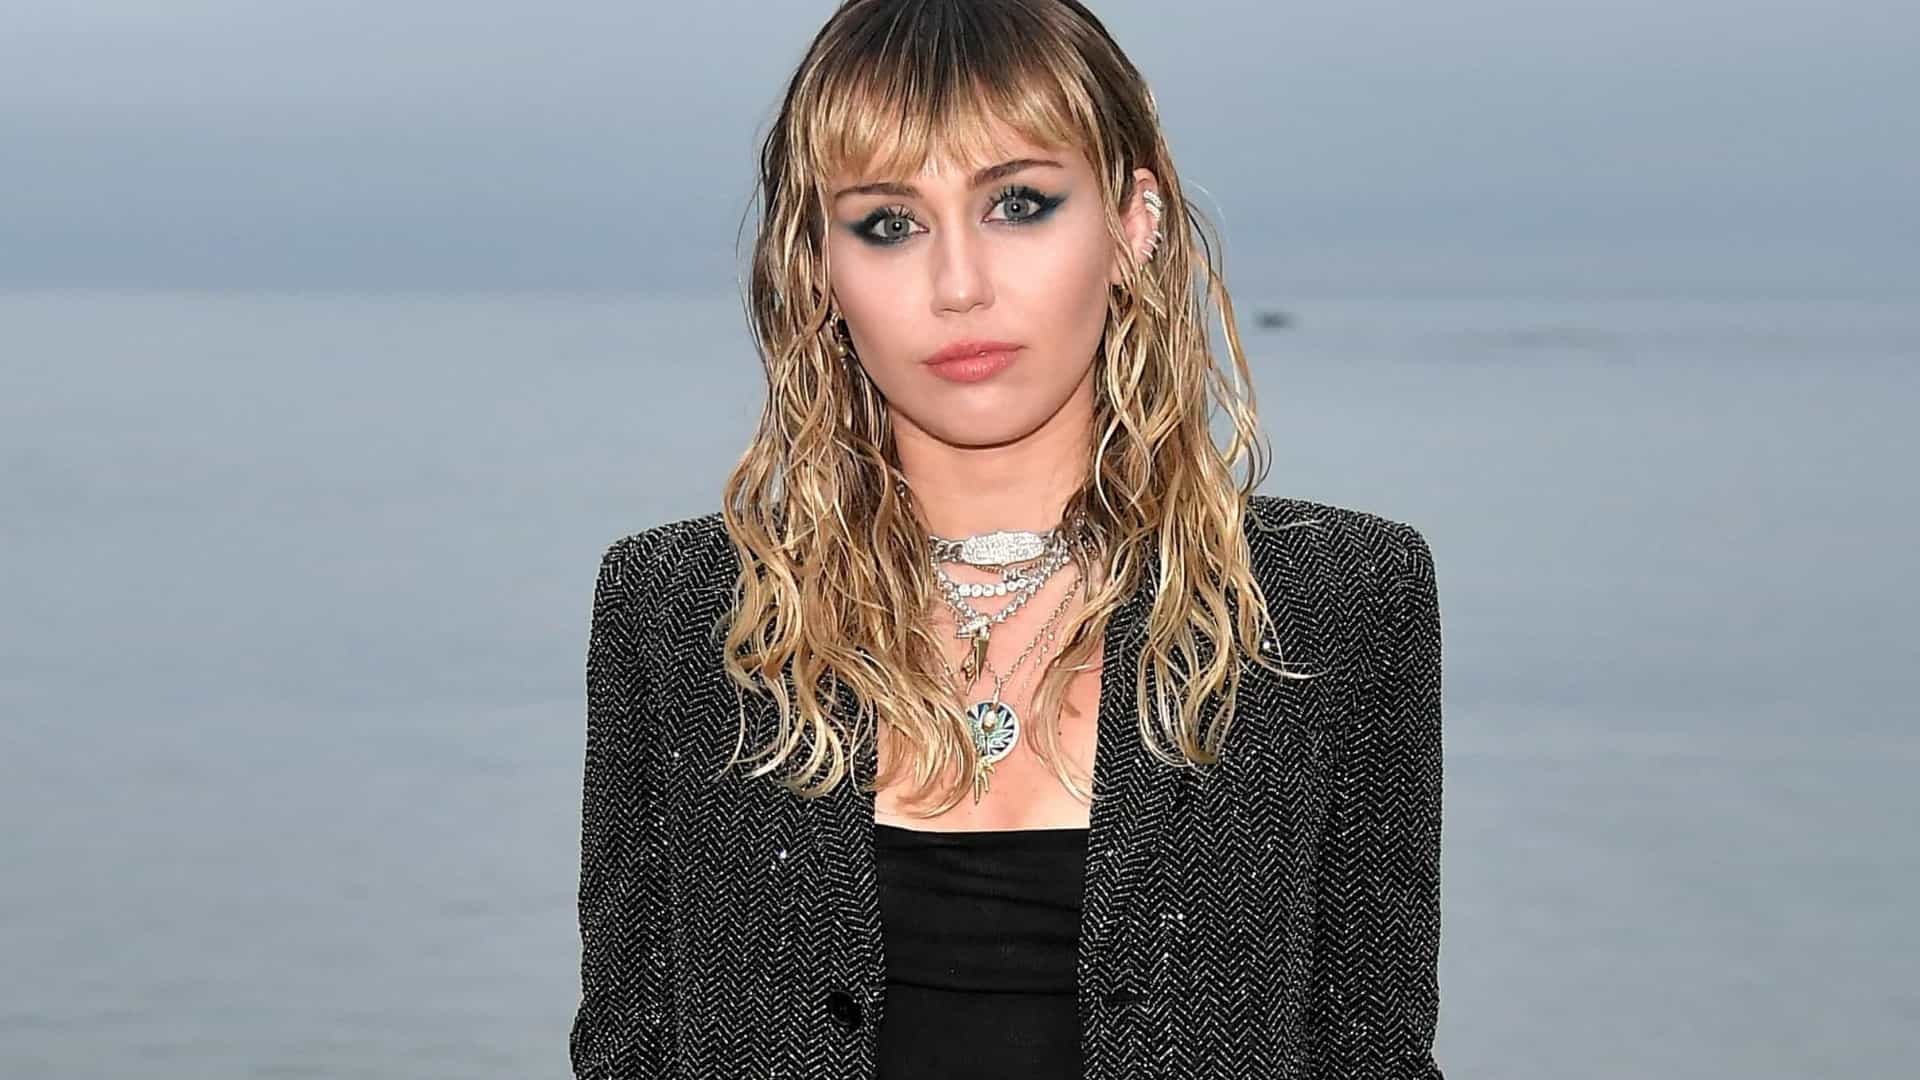 "Eu não estou usando drogas, não estou bebendo", diz cantora Miley Cyrus